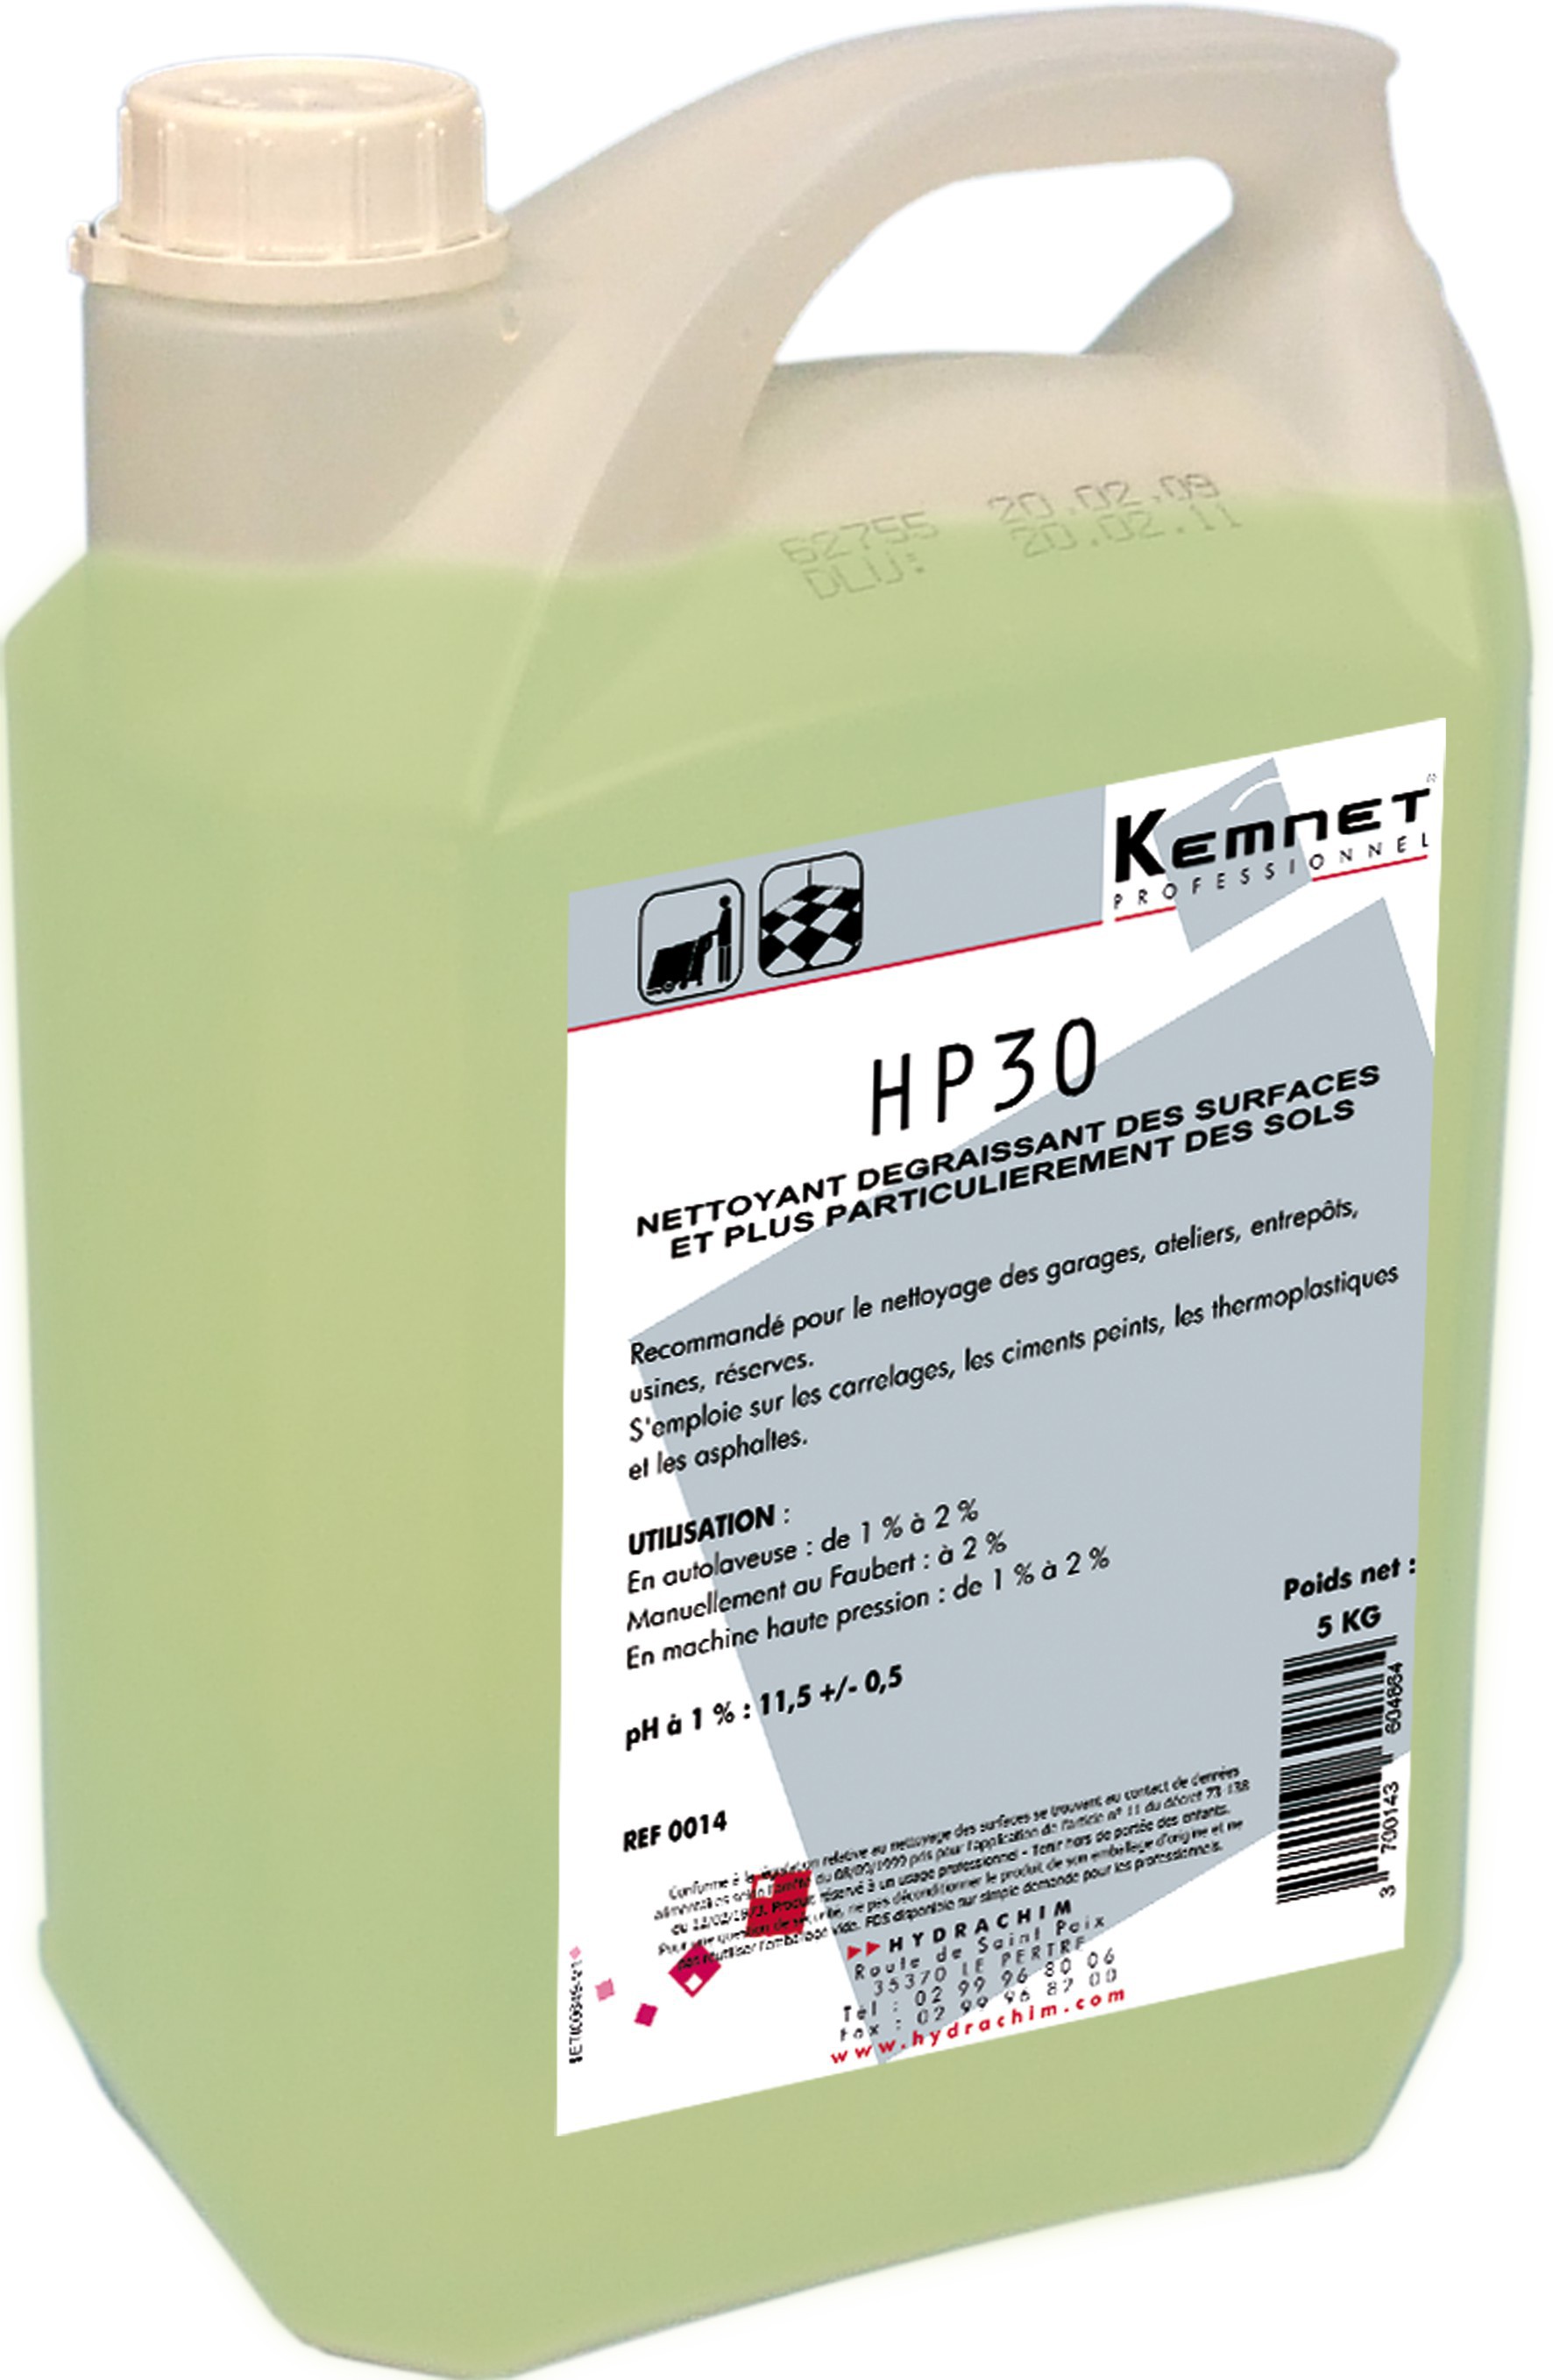 Nettoyant dégraissant HP 30 autolaveuse - KEMNET PRO - 5L